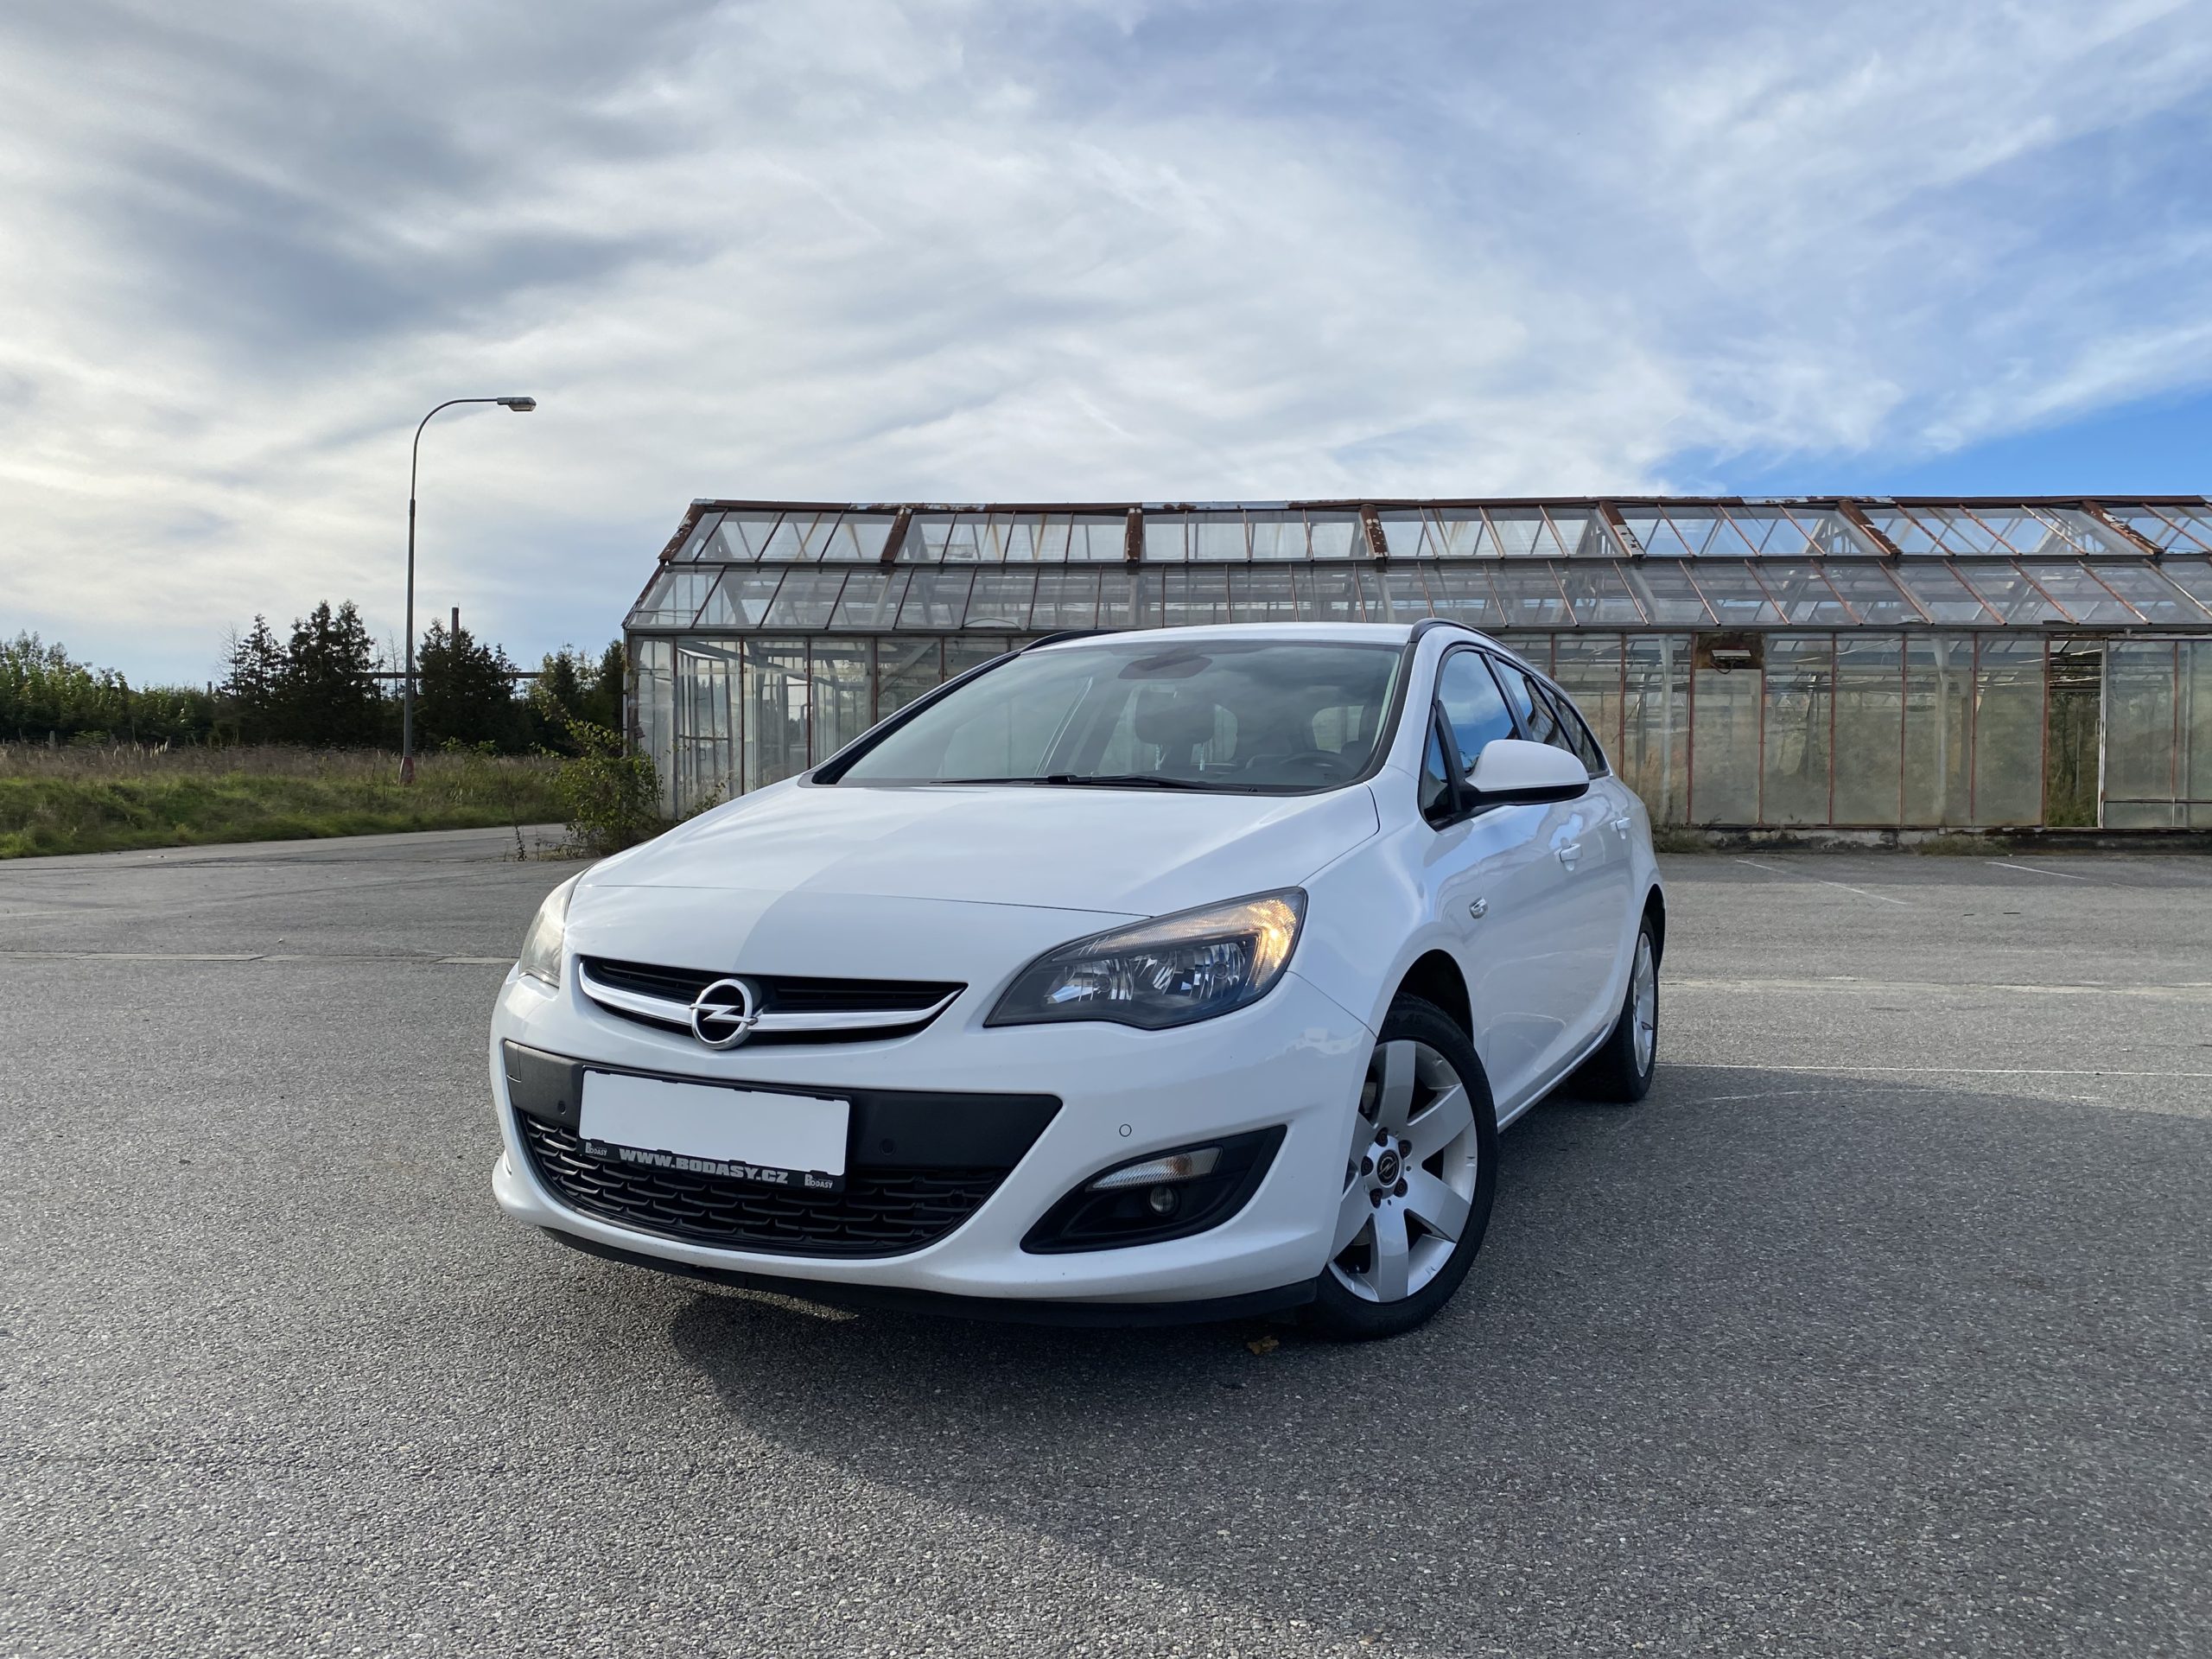 Přečtete si více ze článku [Prodáno] Novinka na prodej – Opel Astra 1.7 CDTi 81kw 2014 Facelift